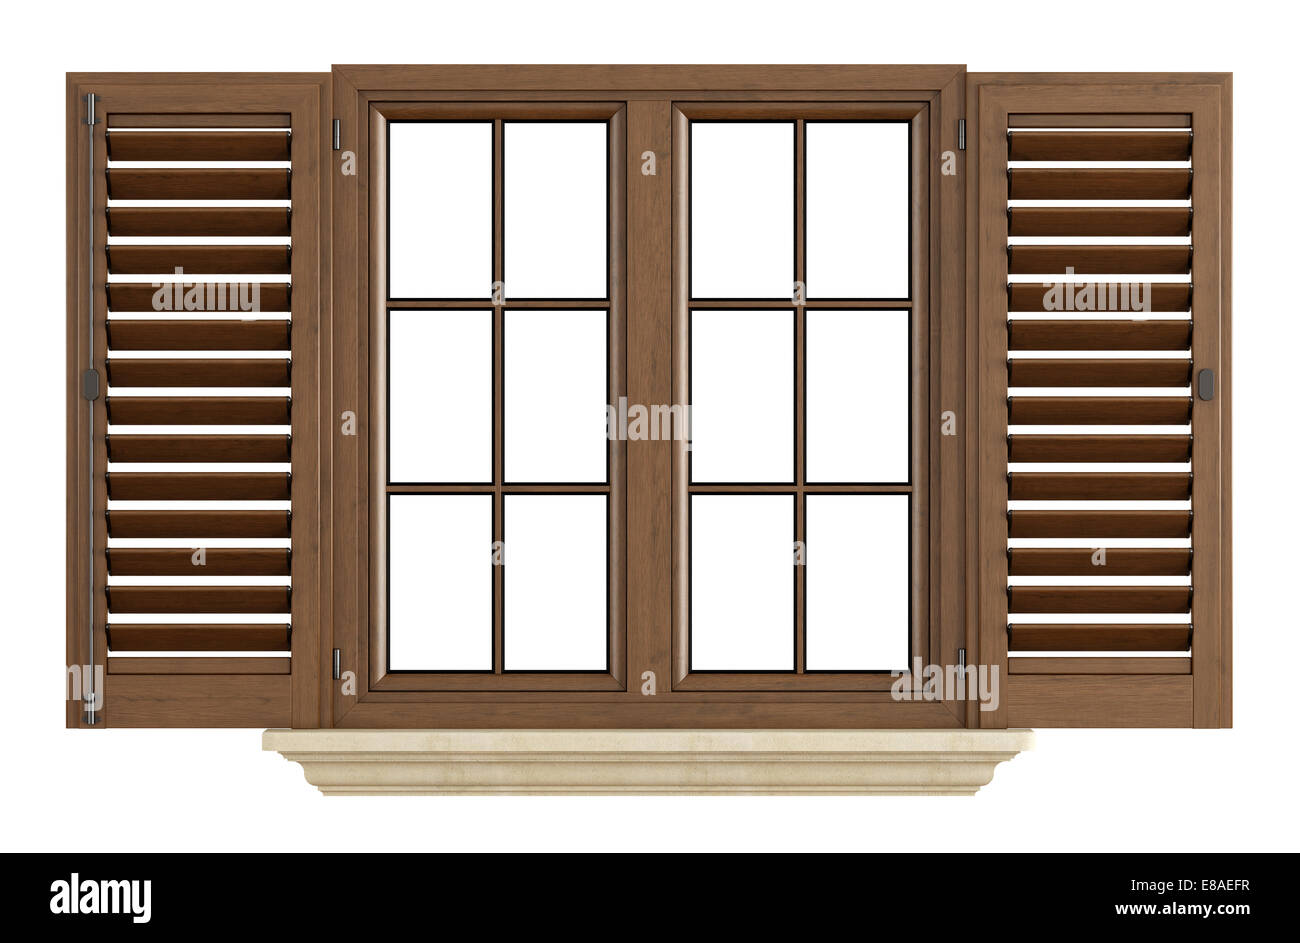 Holzfenster mit offener Blende isoliert auf weiss - Rendering Stockfoto